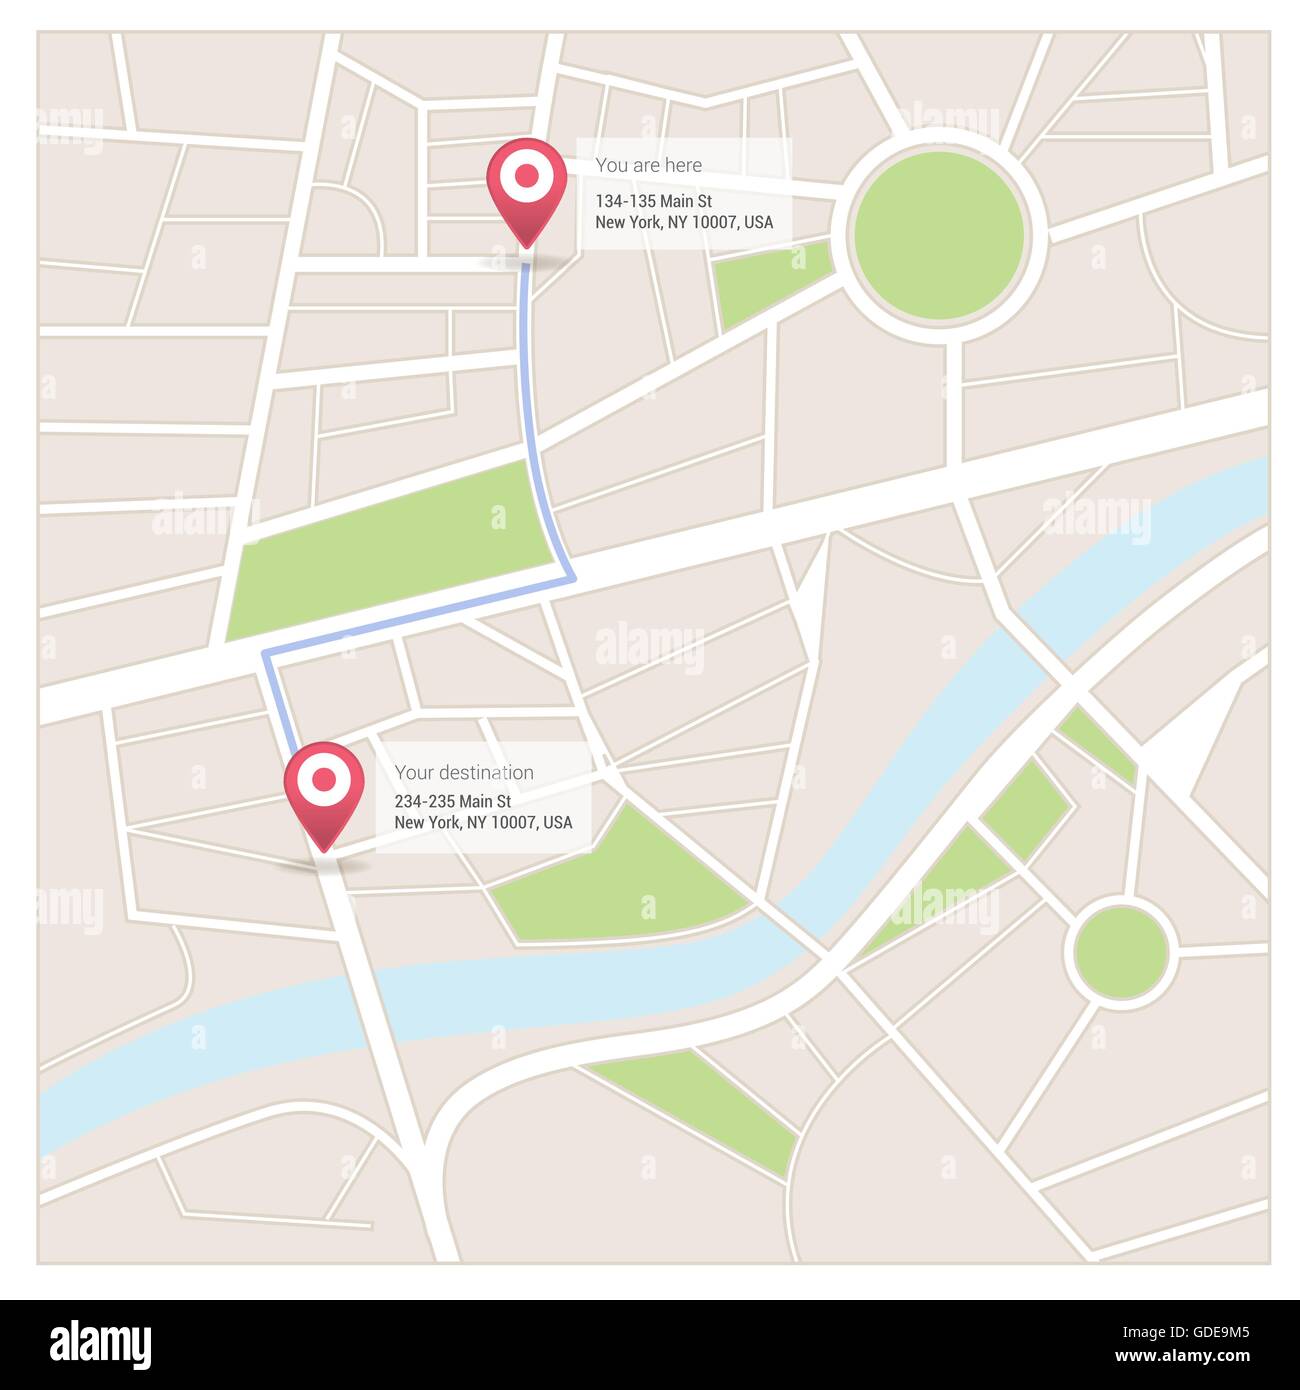 Plan de la ville avec les axes, la destination et les informations GPS Illustration de Vecteur